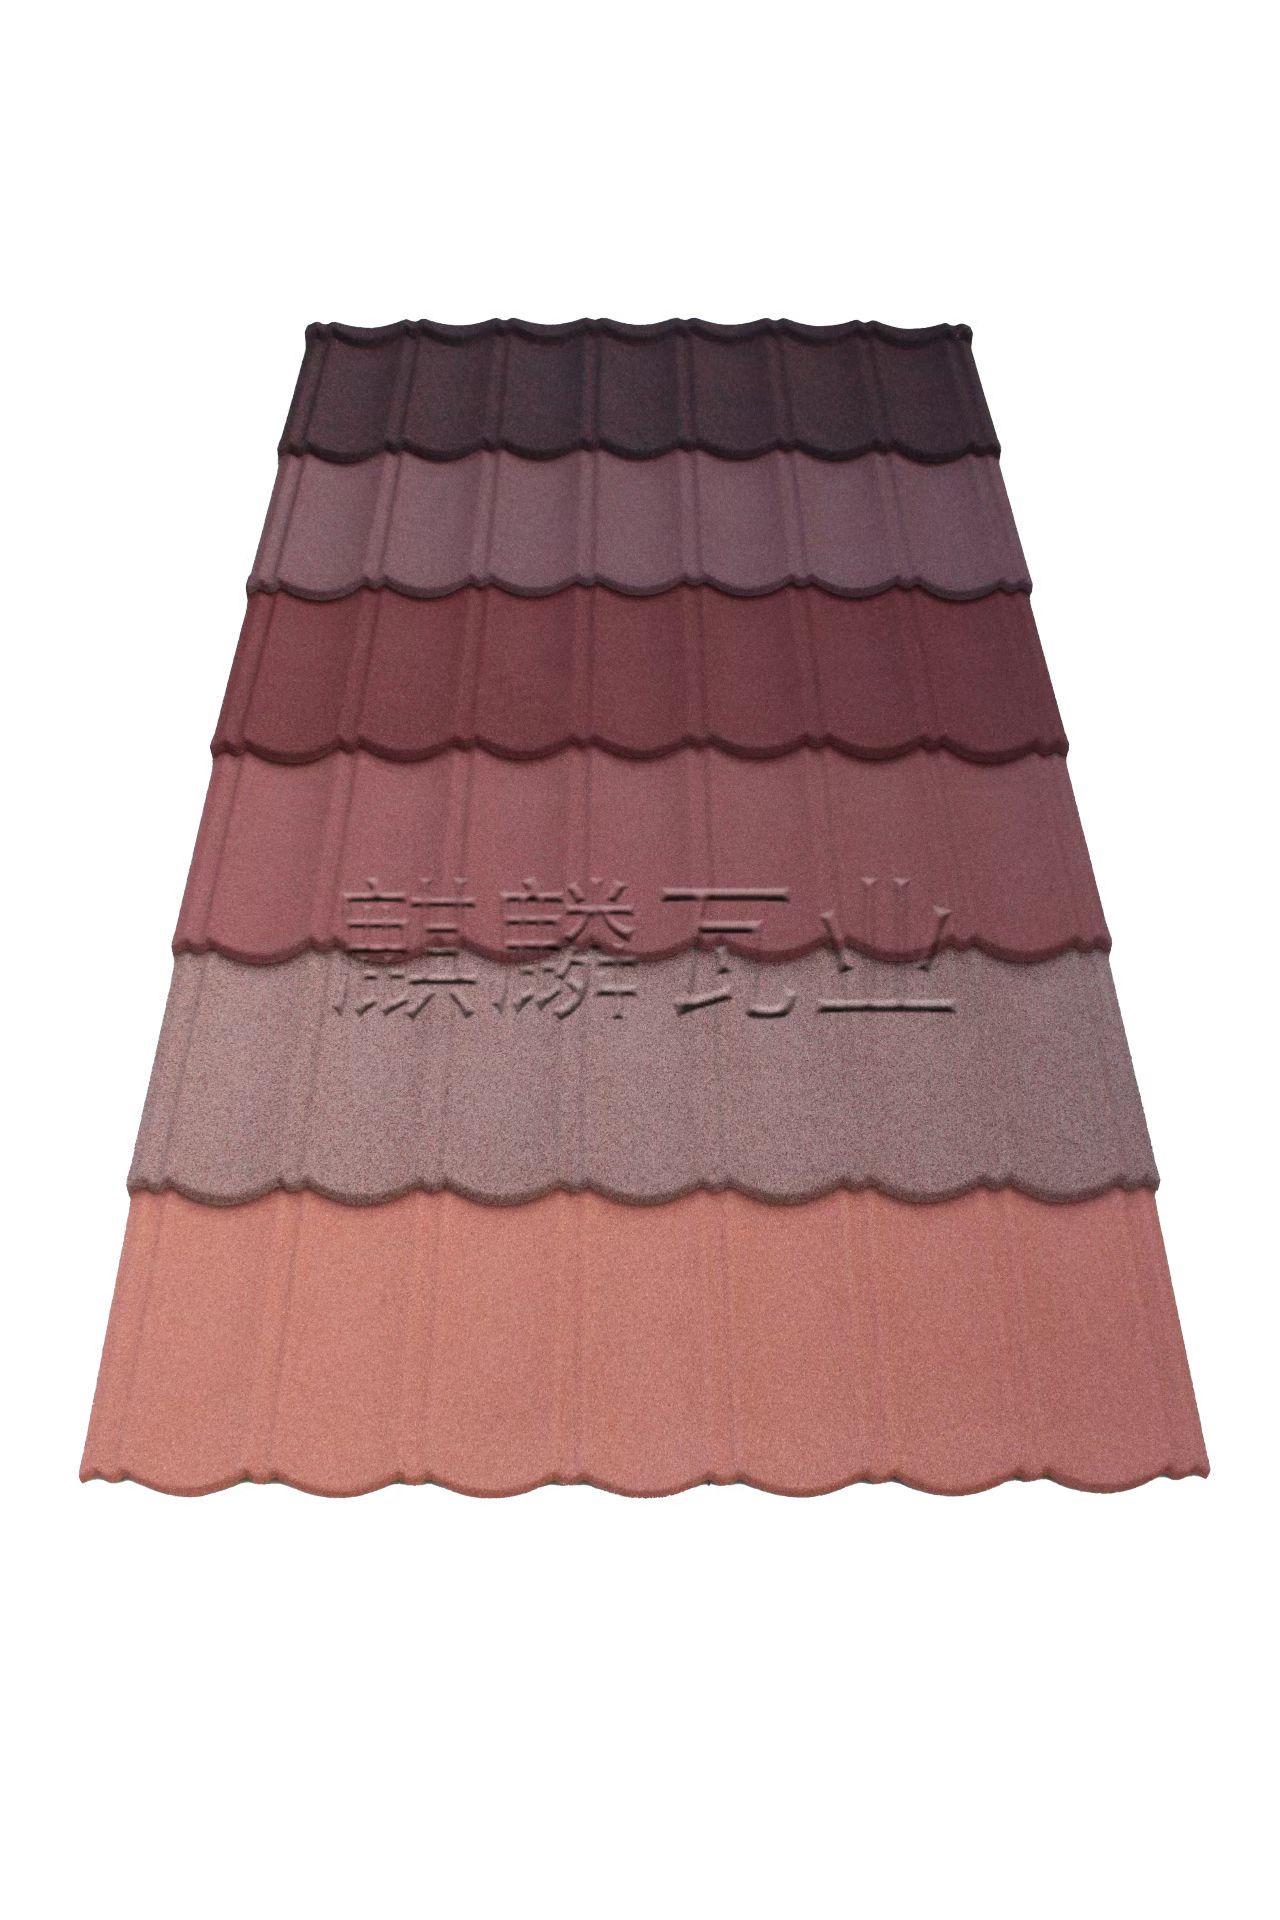 屋顶连石金属瓦 防水 斜边型 色彩多样 款式可选